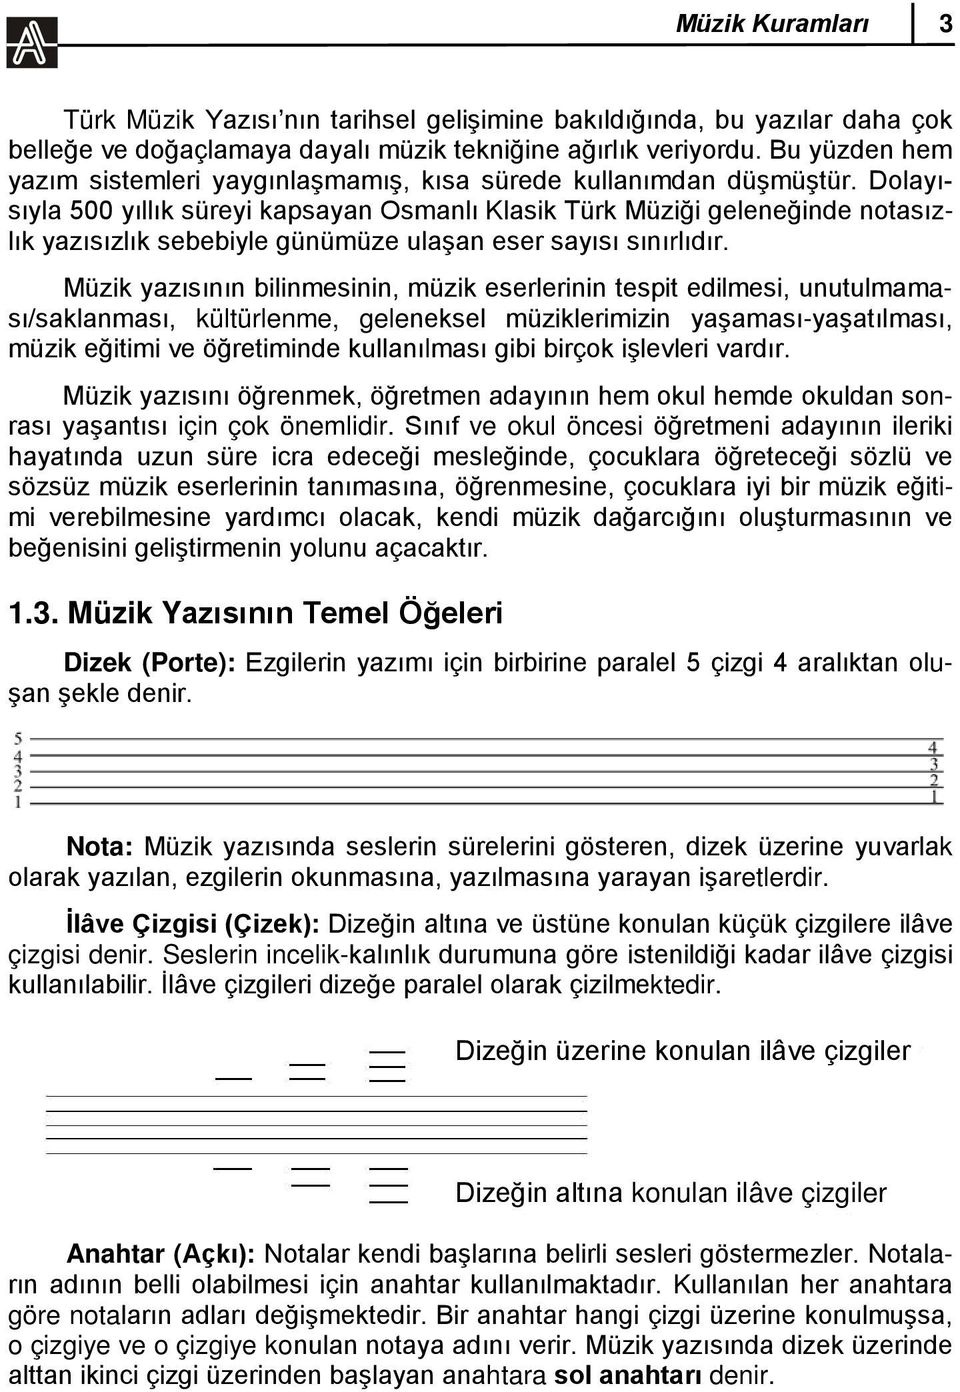 Dolayısıyla 500 yıllık süreyi kapsayan Osmanlı Klasik Türk Müziği geleneğinde notasızlık yazısızlık sebebiyle günümüze ulaşan eser sayısı sınırlıdır.